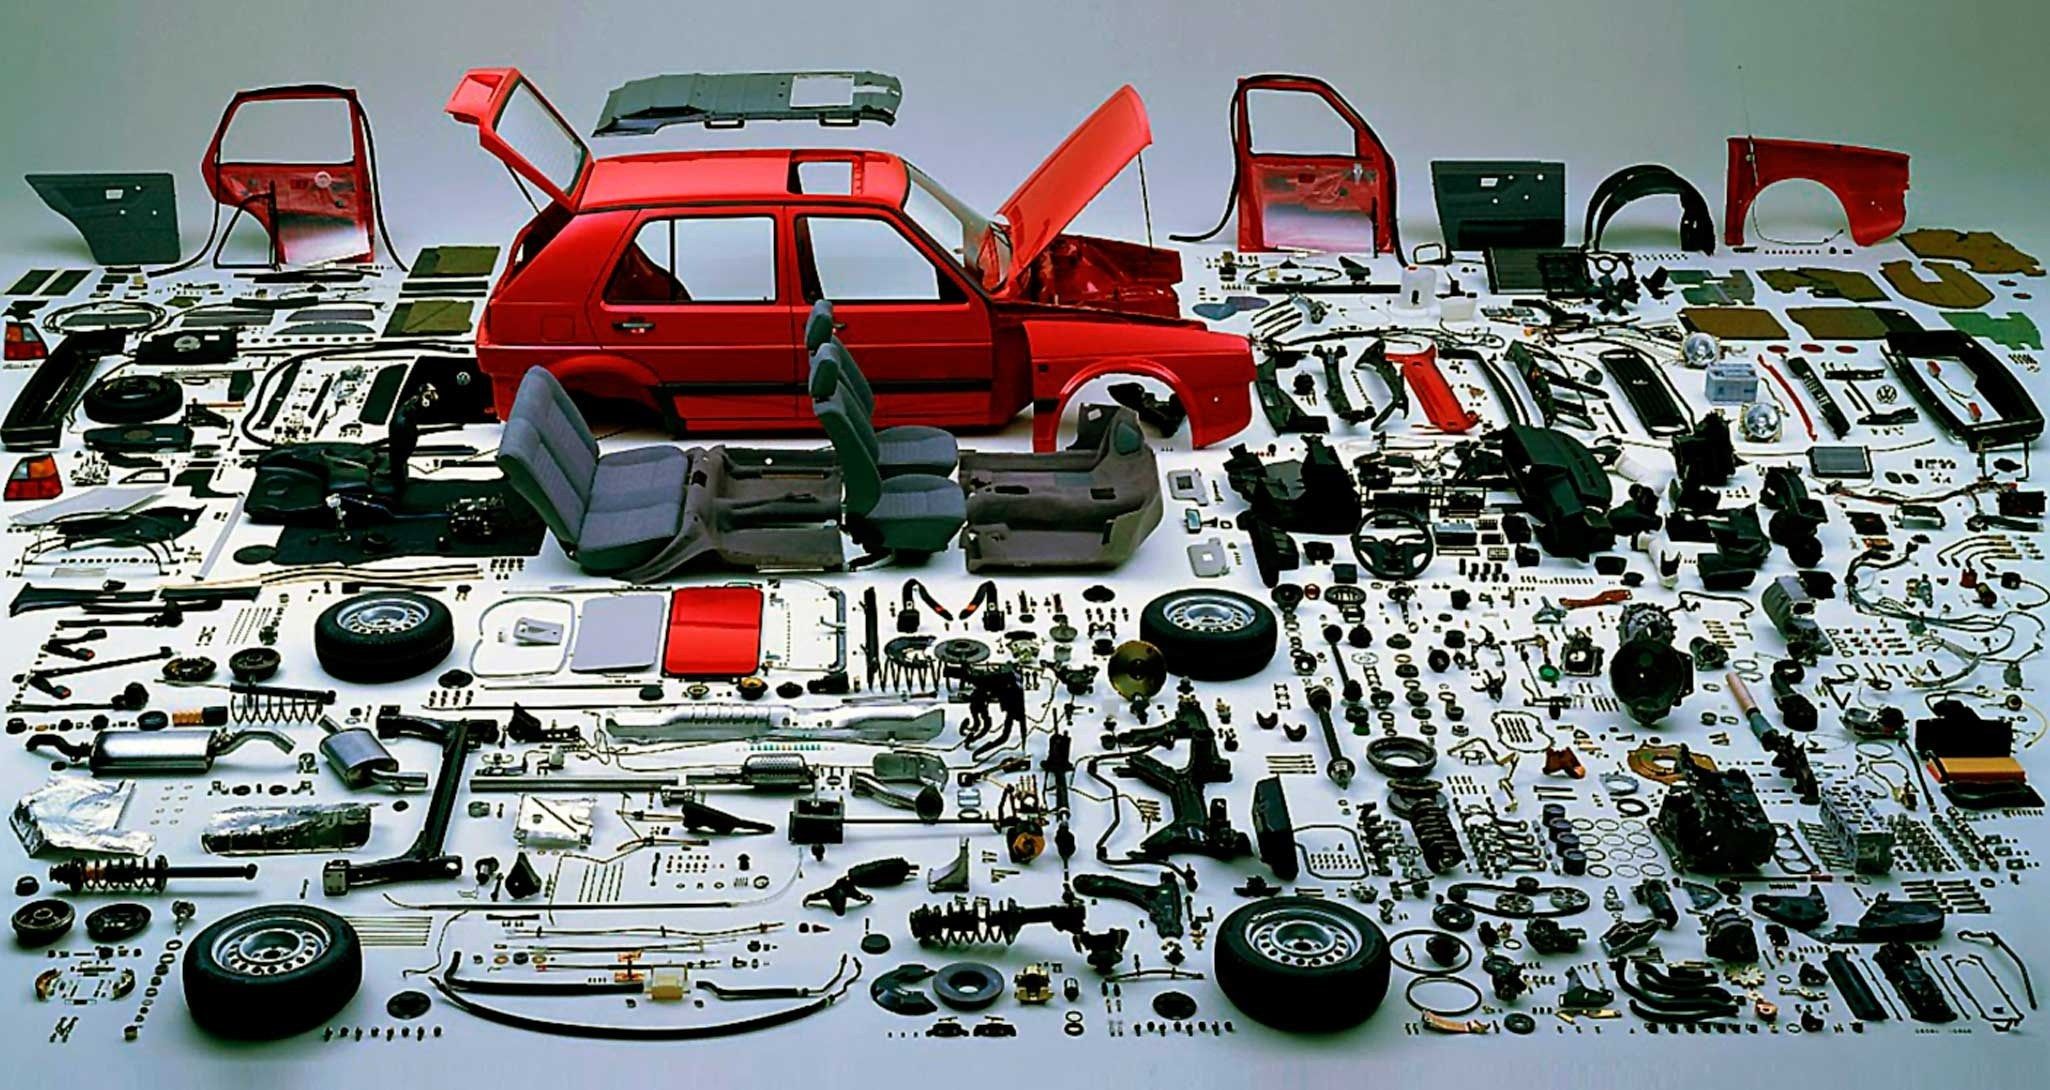 Araba componentleri, parçaları